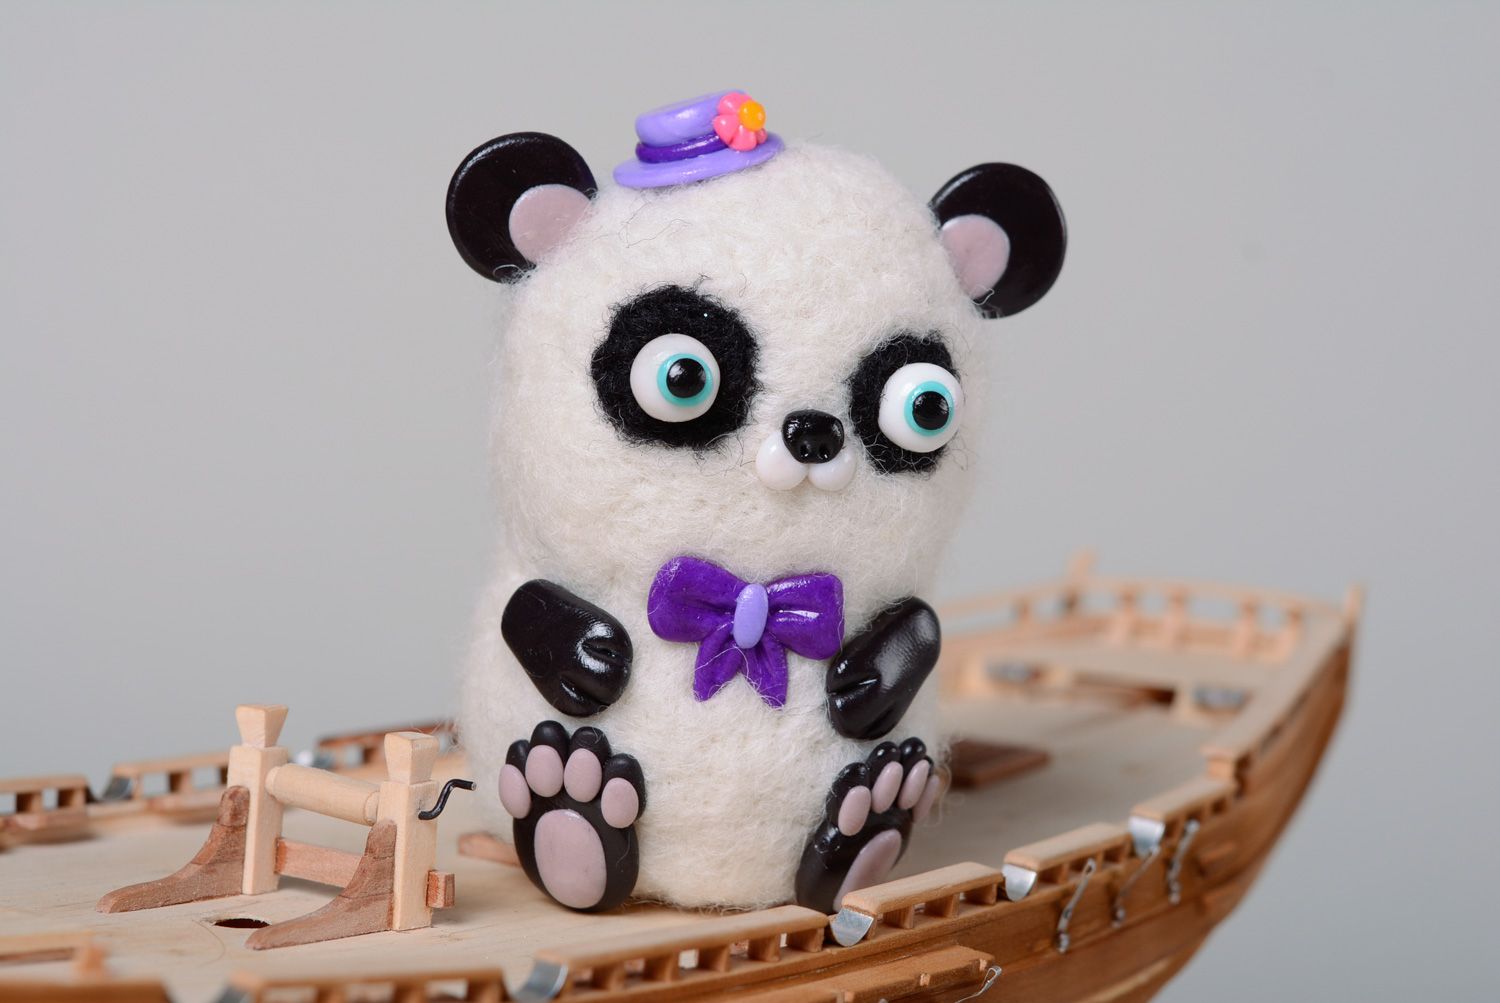 Jouet de poche fait main original en laine technique de feutrage Panda photo 1